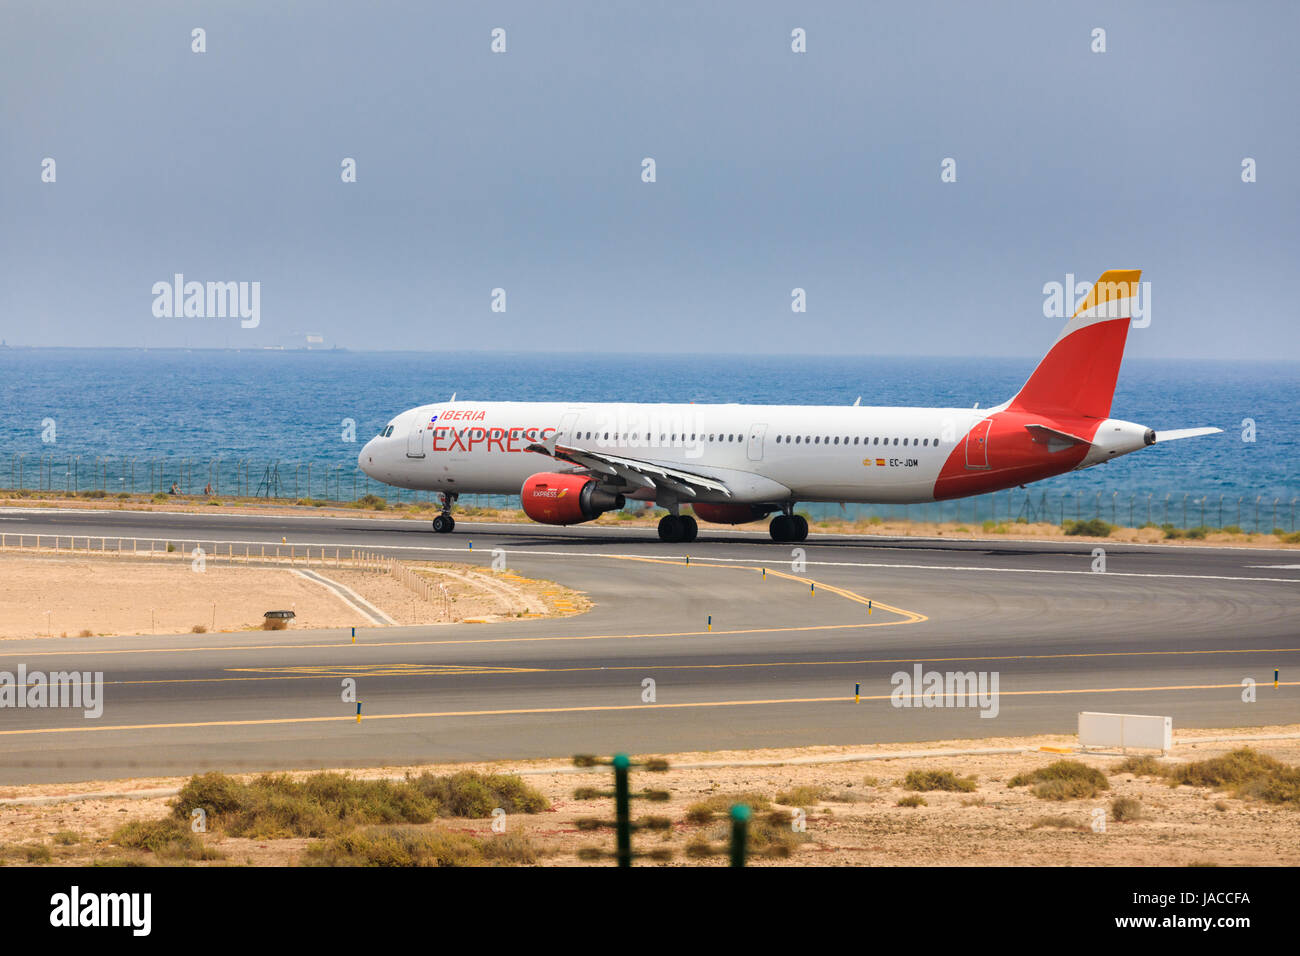 ARECIFE, Spanien - 16. April 2017: AirBus A321 der iberischen Halbinsel mit der Registrierung EG-JDM bereit abzunehmen am Flughafen Lanzarote Stockfoto